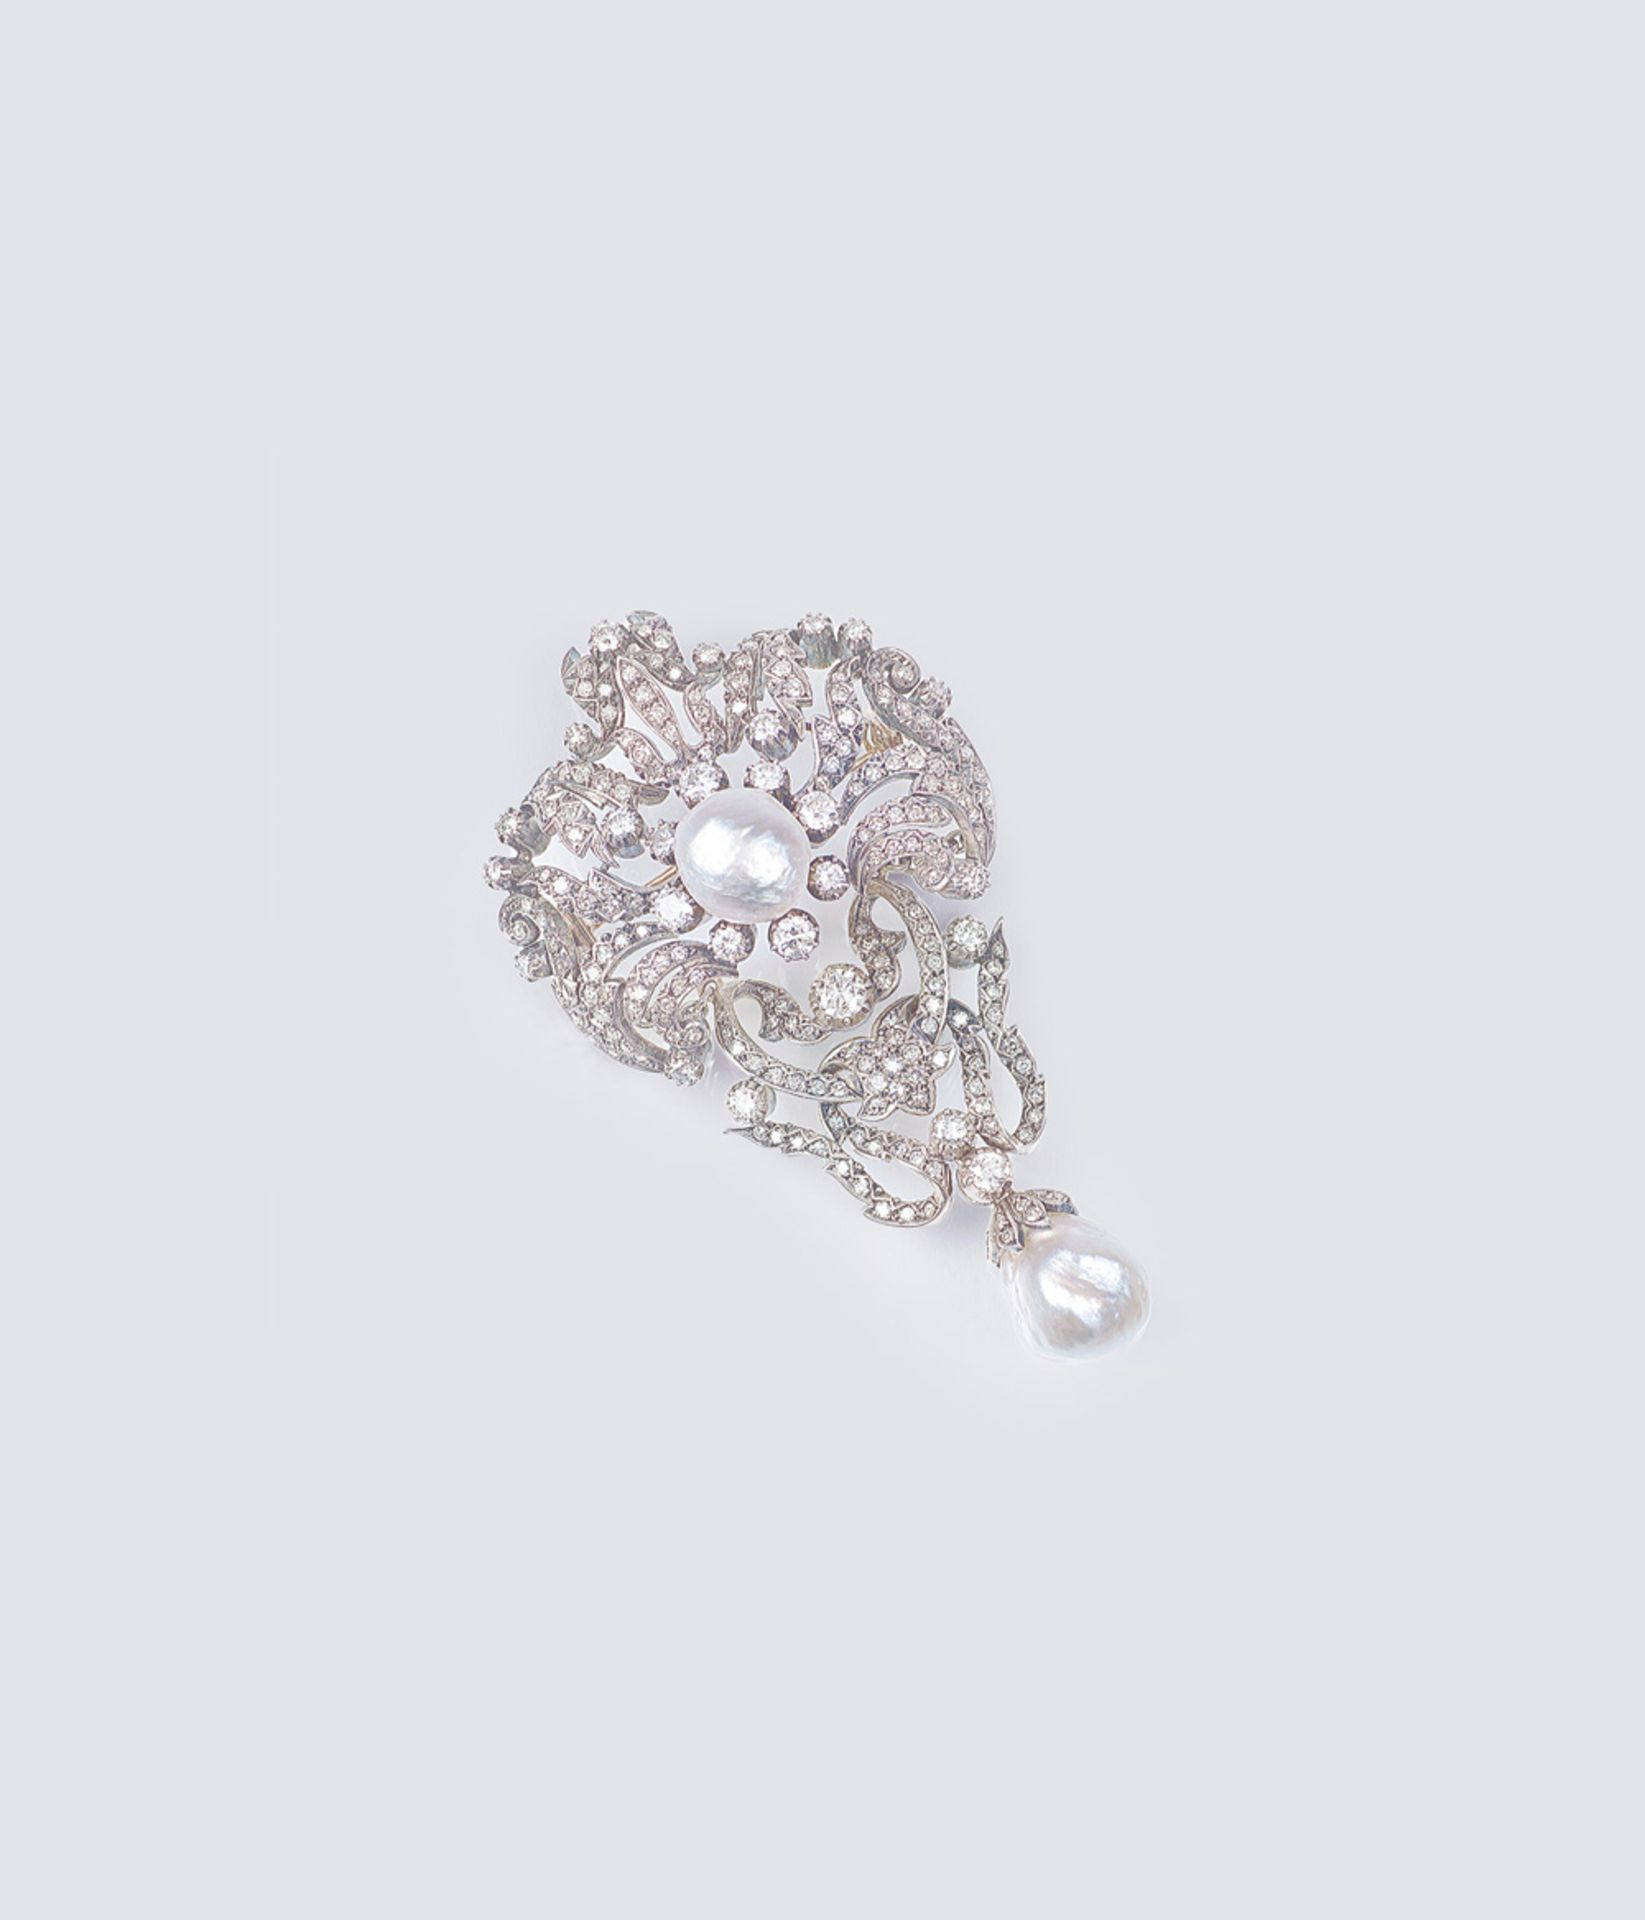 Feine Art-Nouveau Diamant-Brosche mit Barock-Perlen. Um 1915/20. 14 kt. Roségold mit Silber, - Bild 2 aus 2